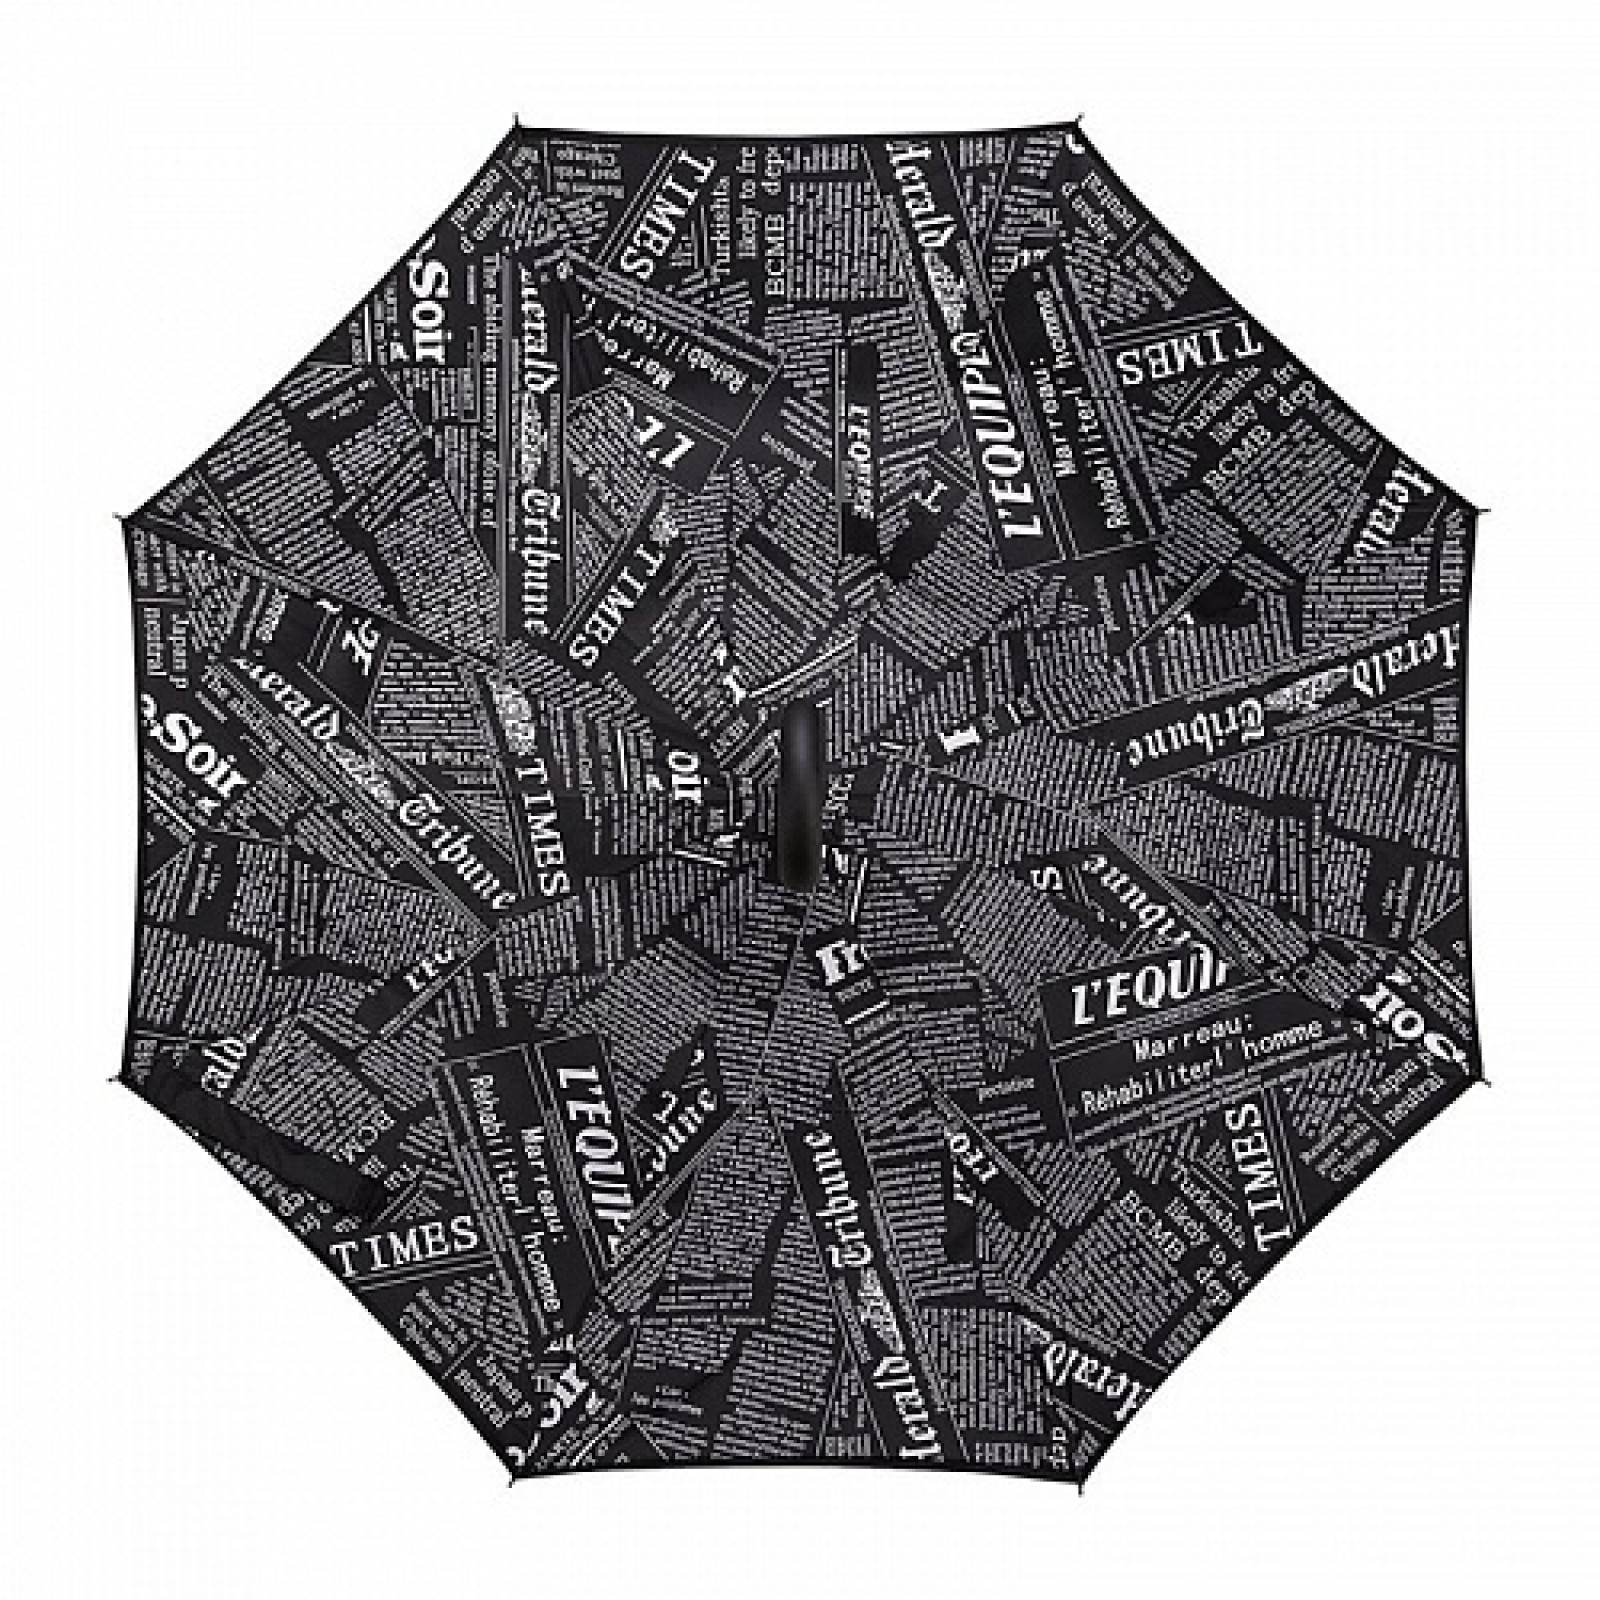 Зонт обратного сложения, антизонт, умный зонт, зонт наоборот Up Brella Черная Газета 154087